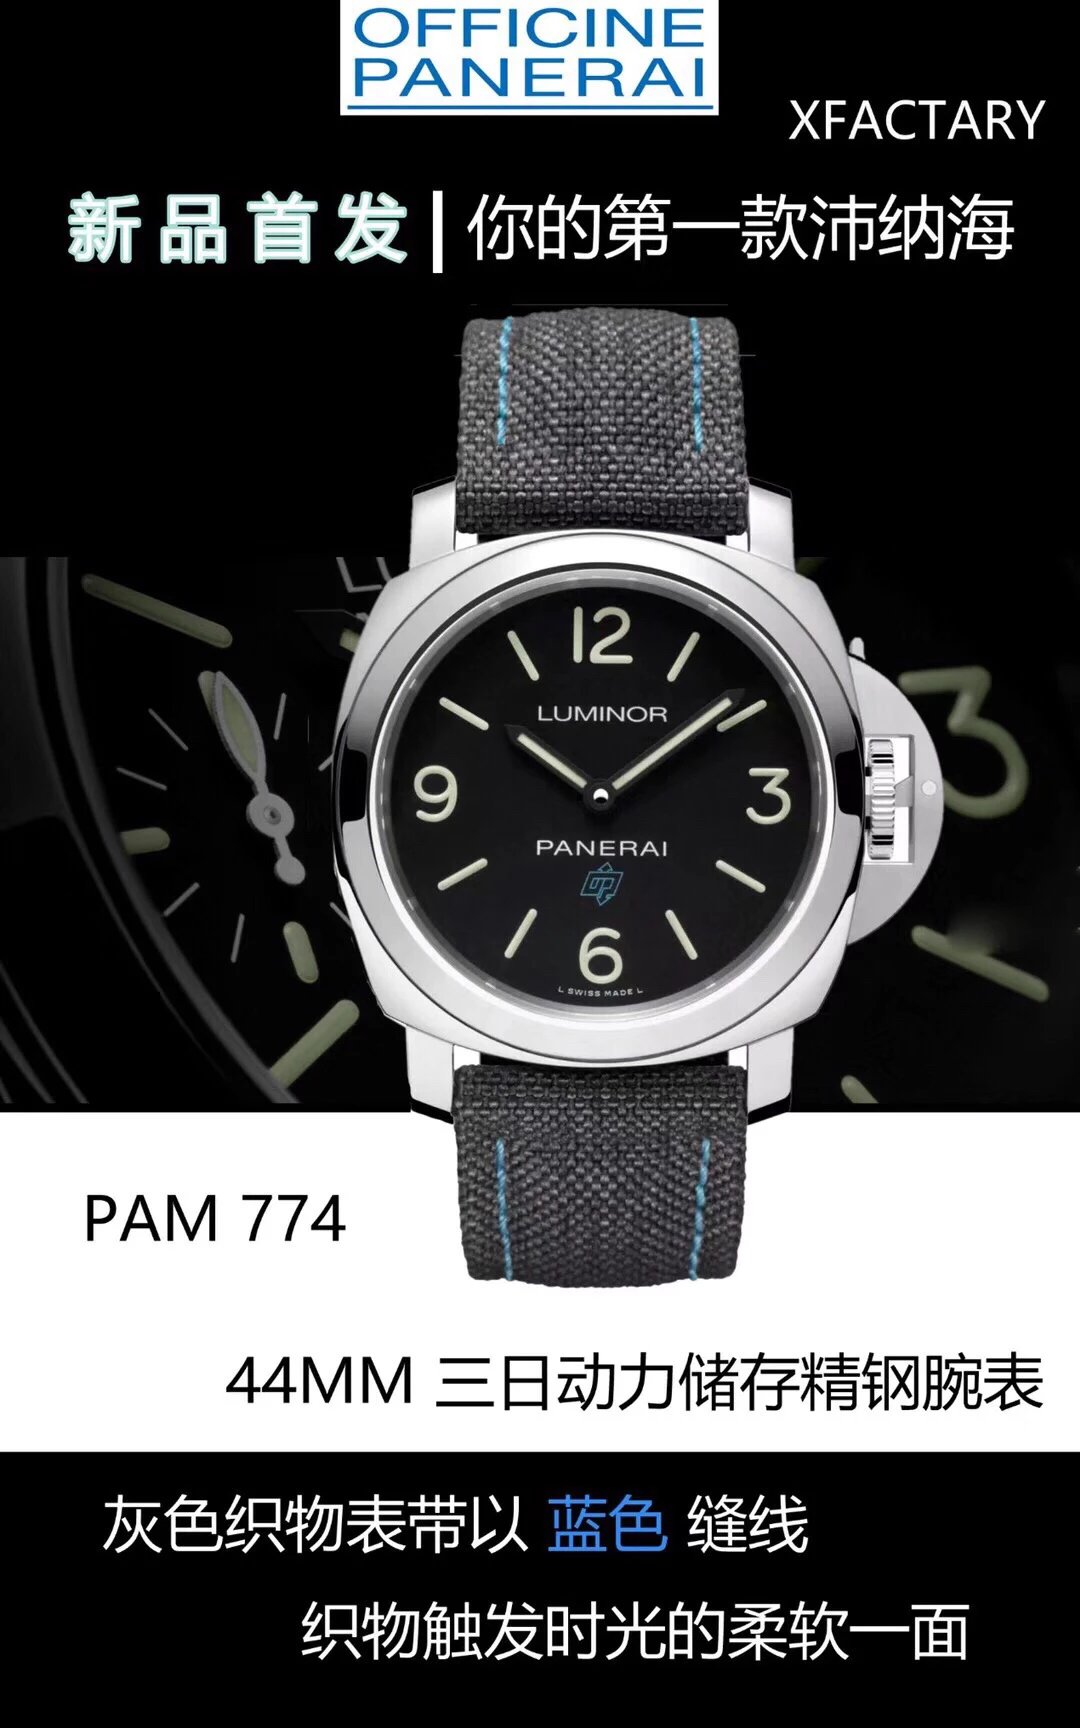 XF新品首发，你的第一款沛纳海PAM7741.沛纳海全新入门款，44mm316精钢腕表